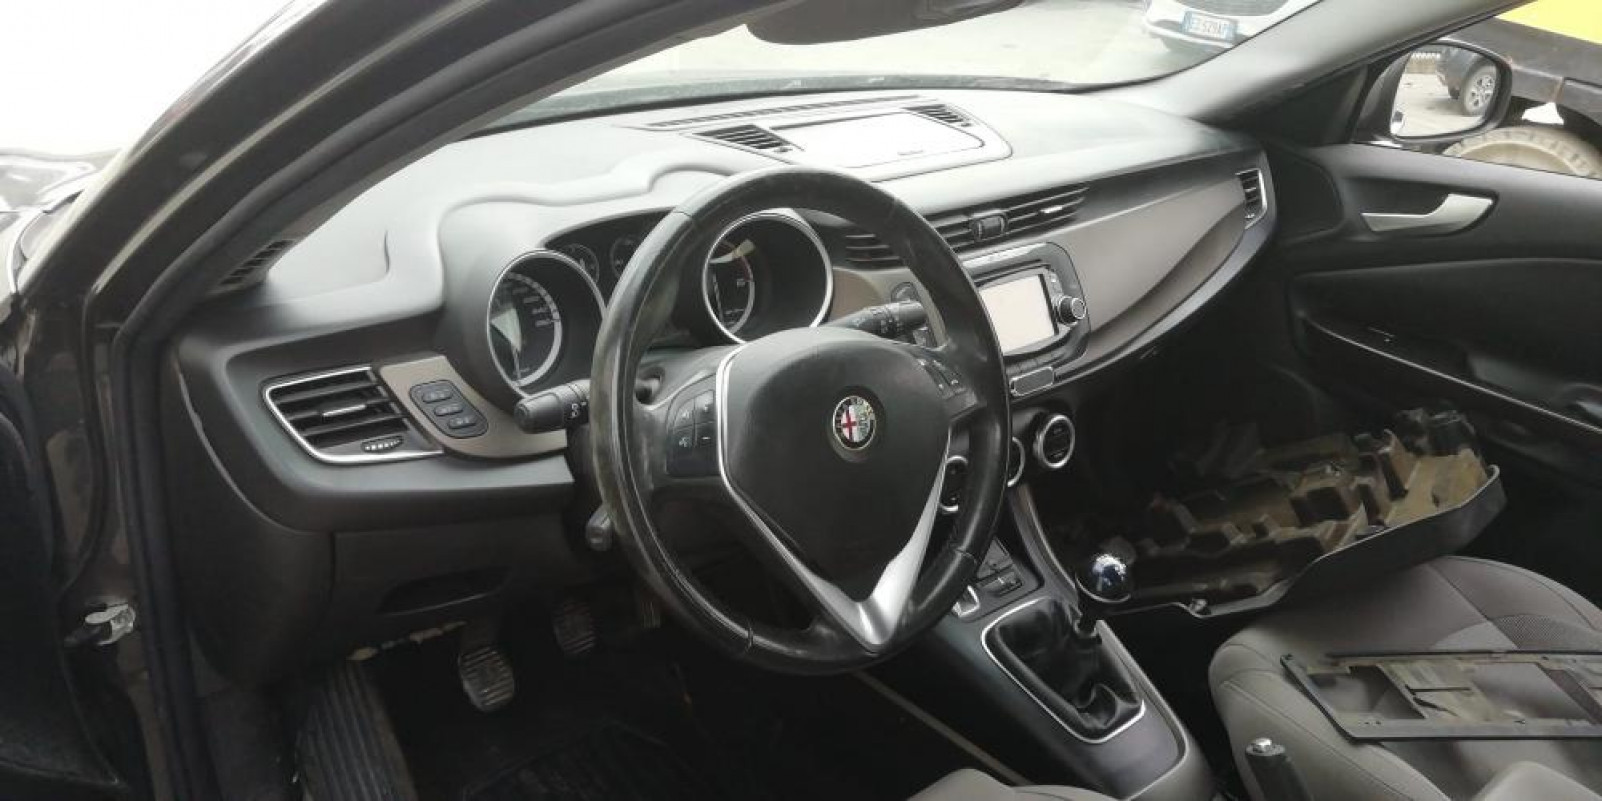 Alfa Romeo Giulietta anno 2014 solo per ricambi